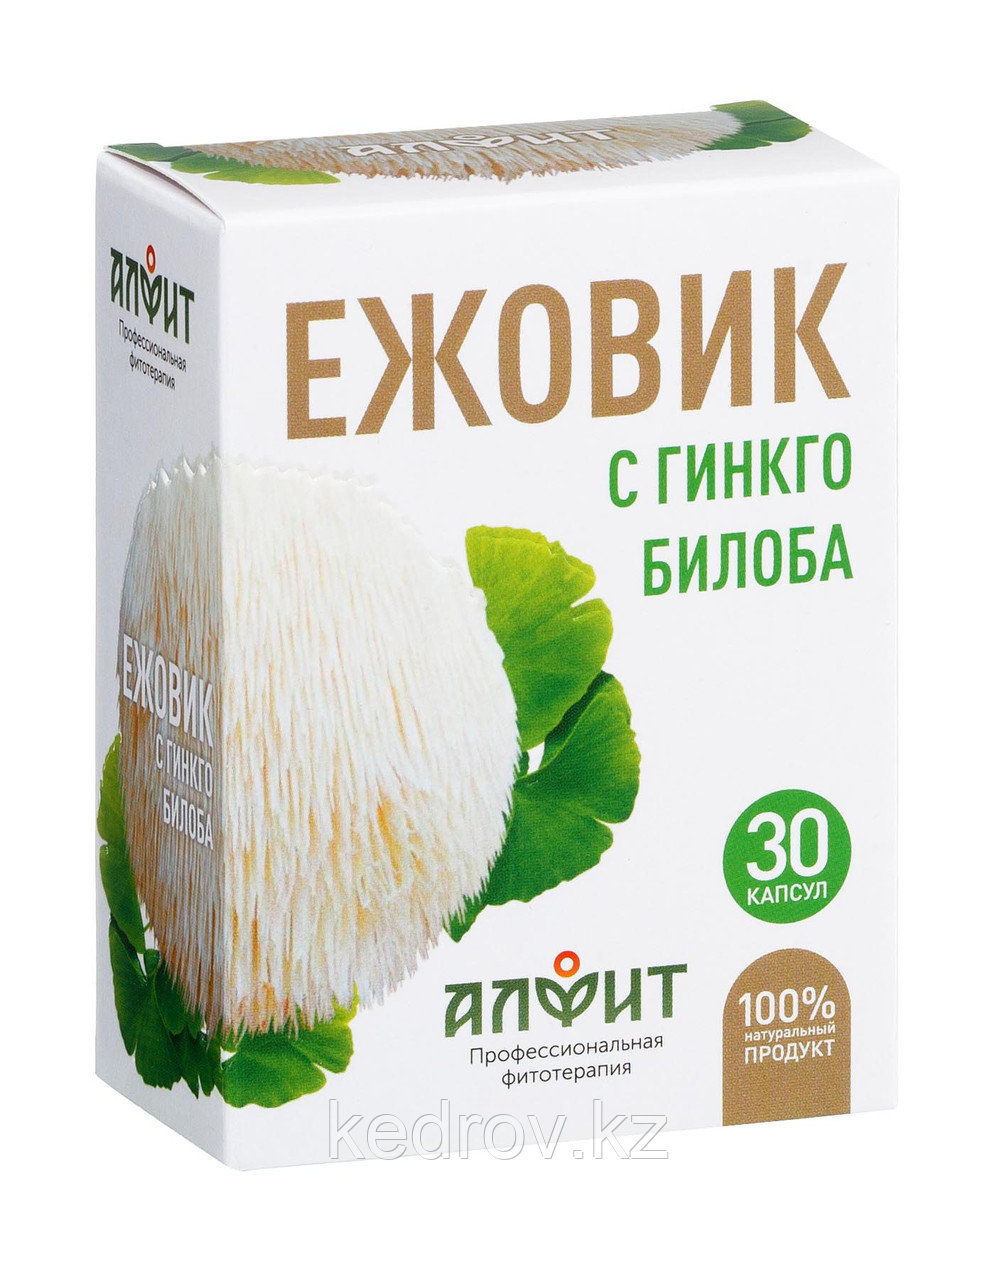 Концентрат на растительном сырье "Ежовик с гинкго билоба", 30 капсул по 500 мг.